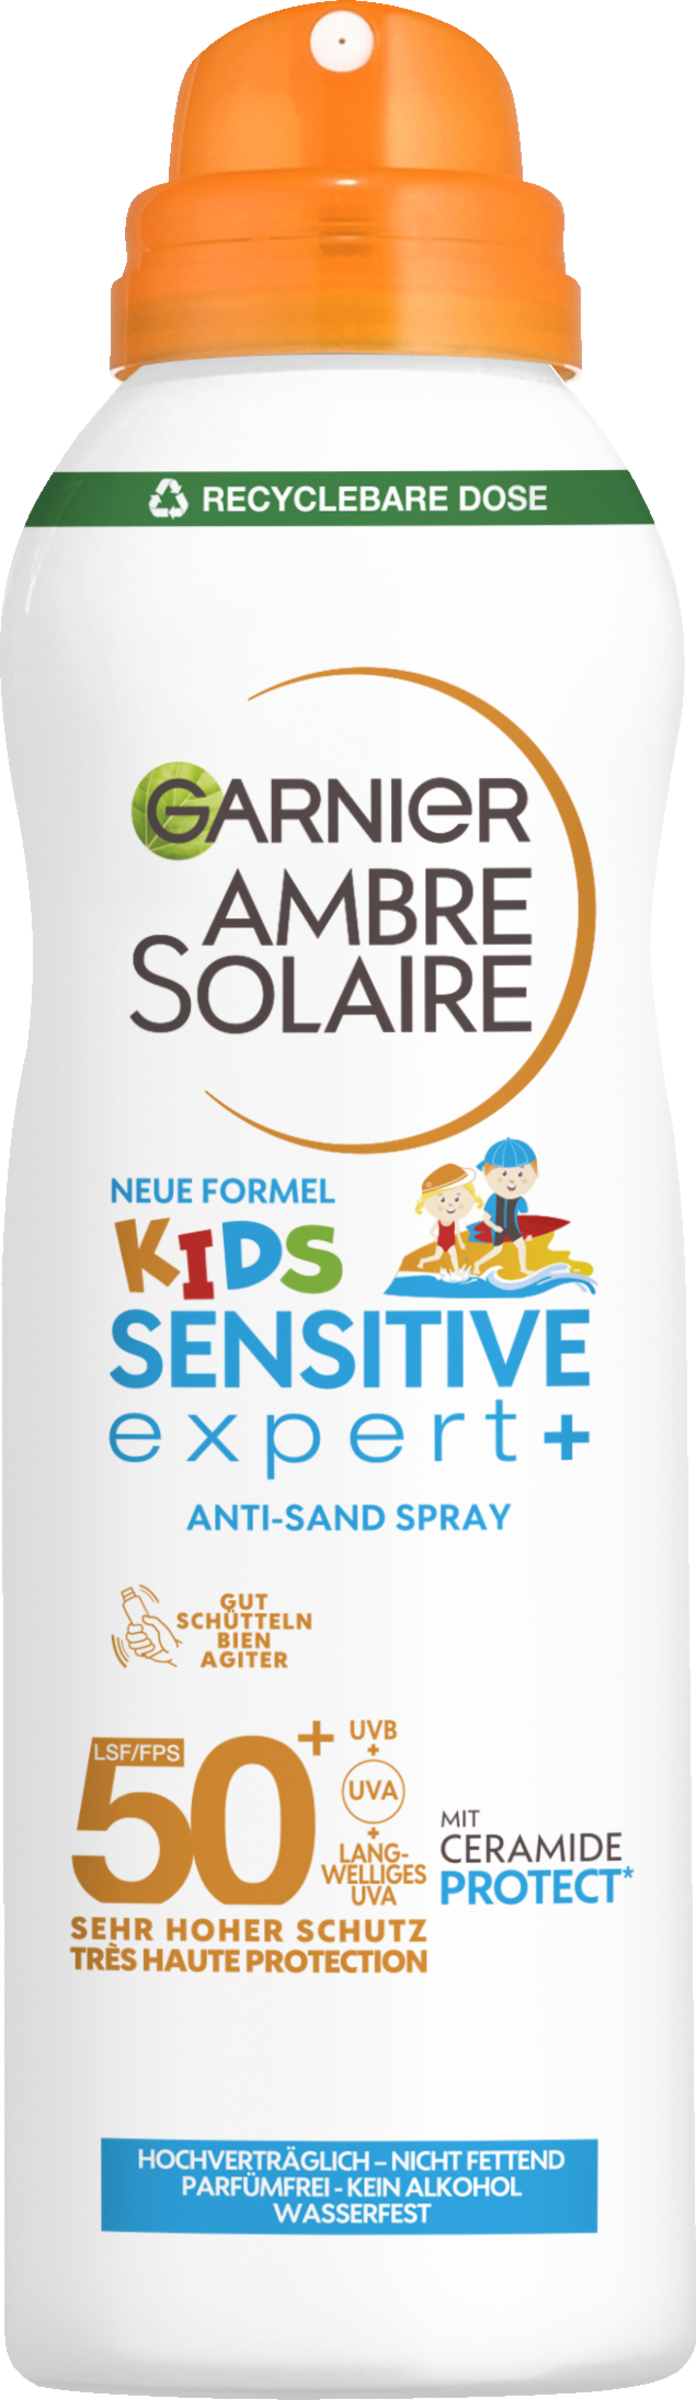 Kids sensitive expert+ anti-sand spray SPRAU 50+